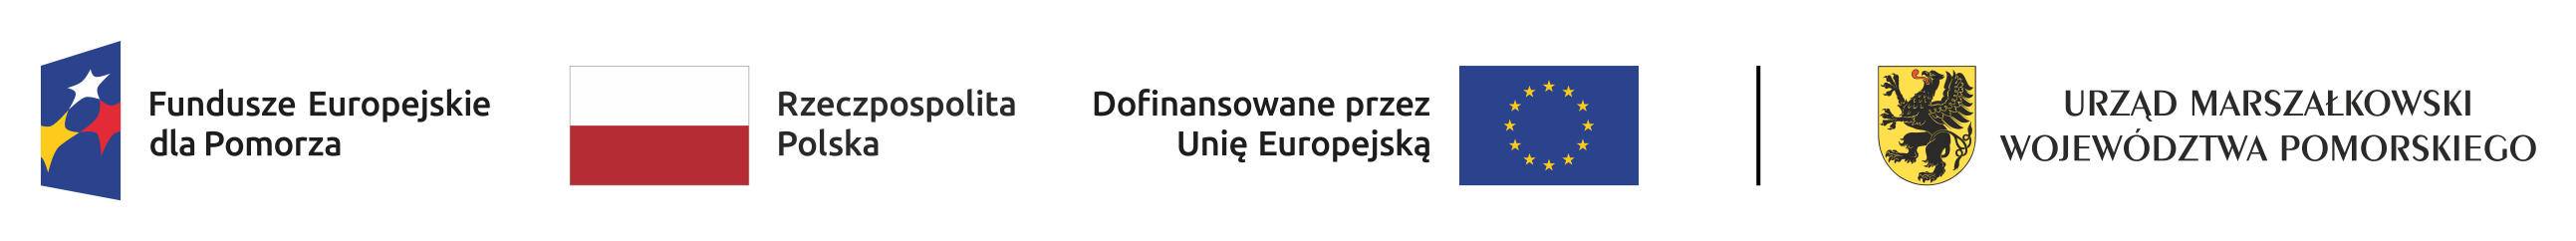 Pasek znaków programu regionalnego Fundusze Europejskie dla Pomorza, flagi Polski, flagi Unii Europejskiej i godła Urzędu Marsałkowskiego Województwa Pomorskiego